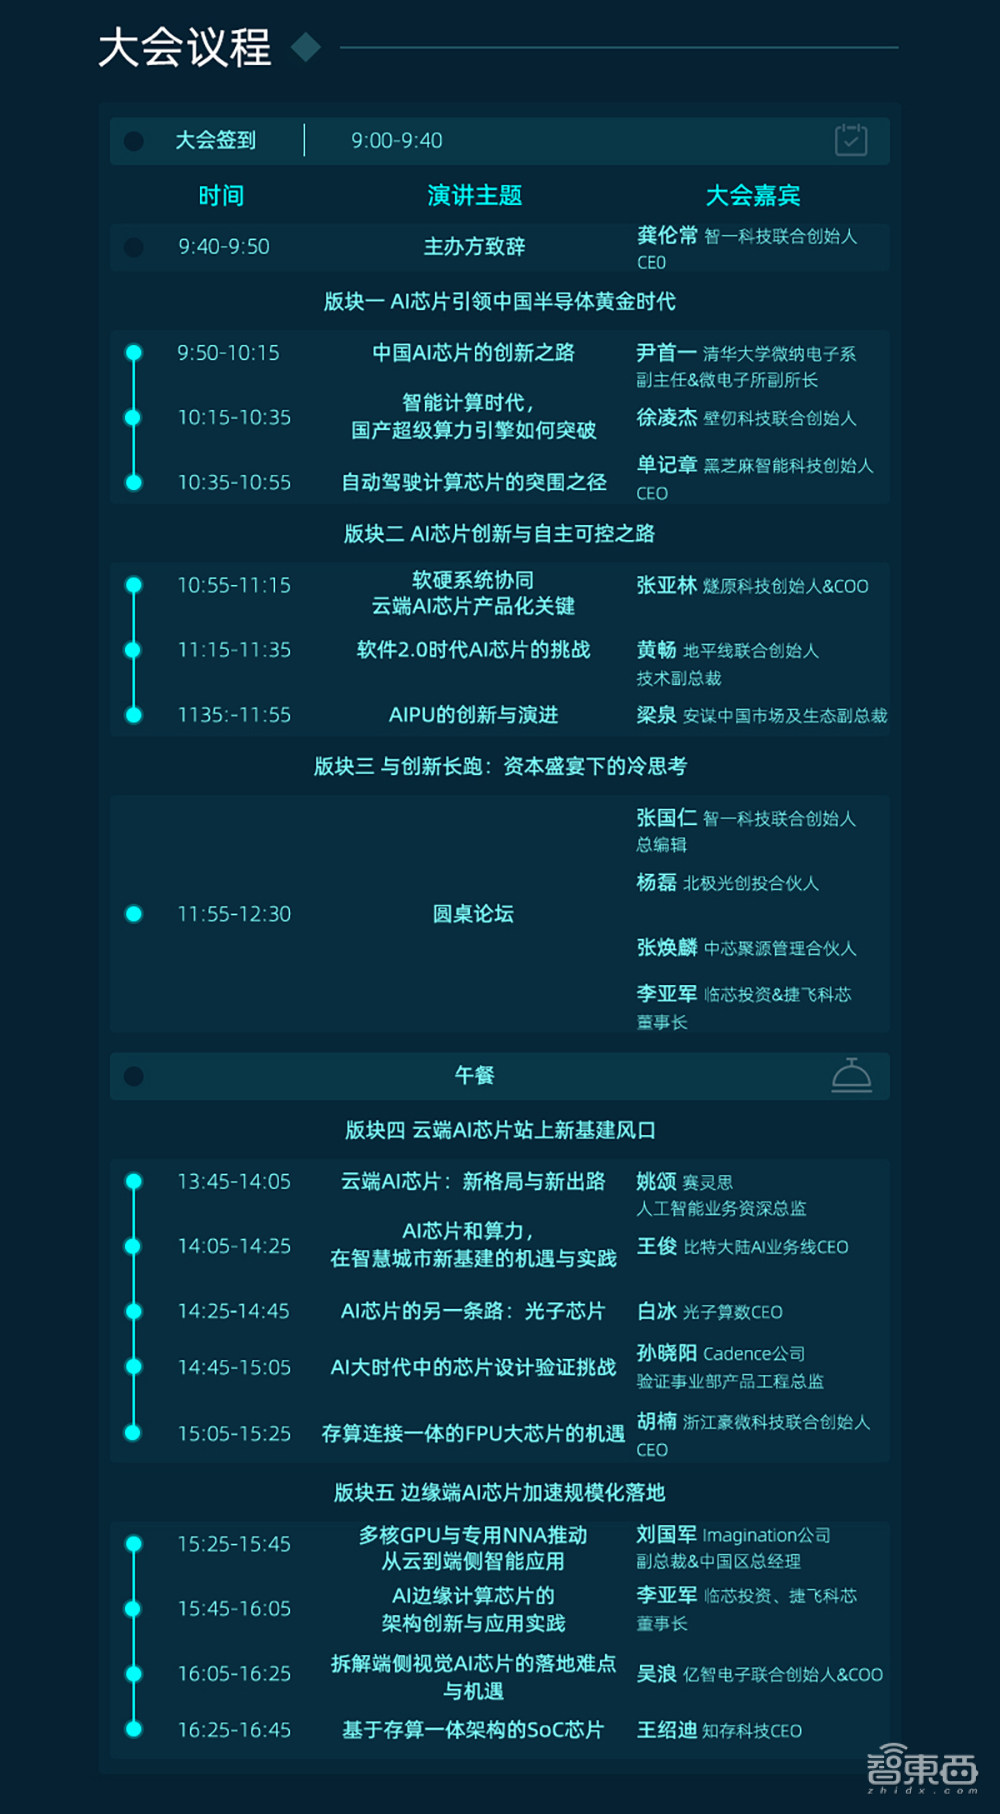 年度ai芯片盛会12月1日北京见 终极议程彩蛋剧透 智东西gtic 领先的互联网消费互动媒体